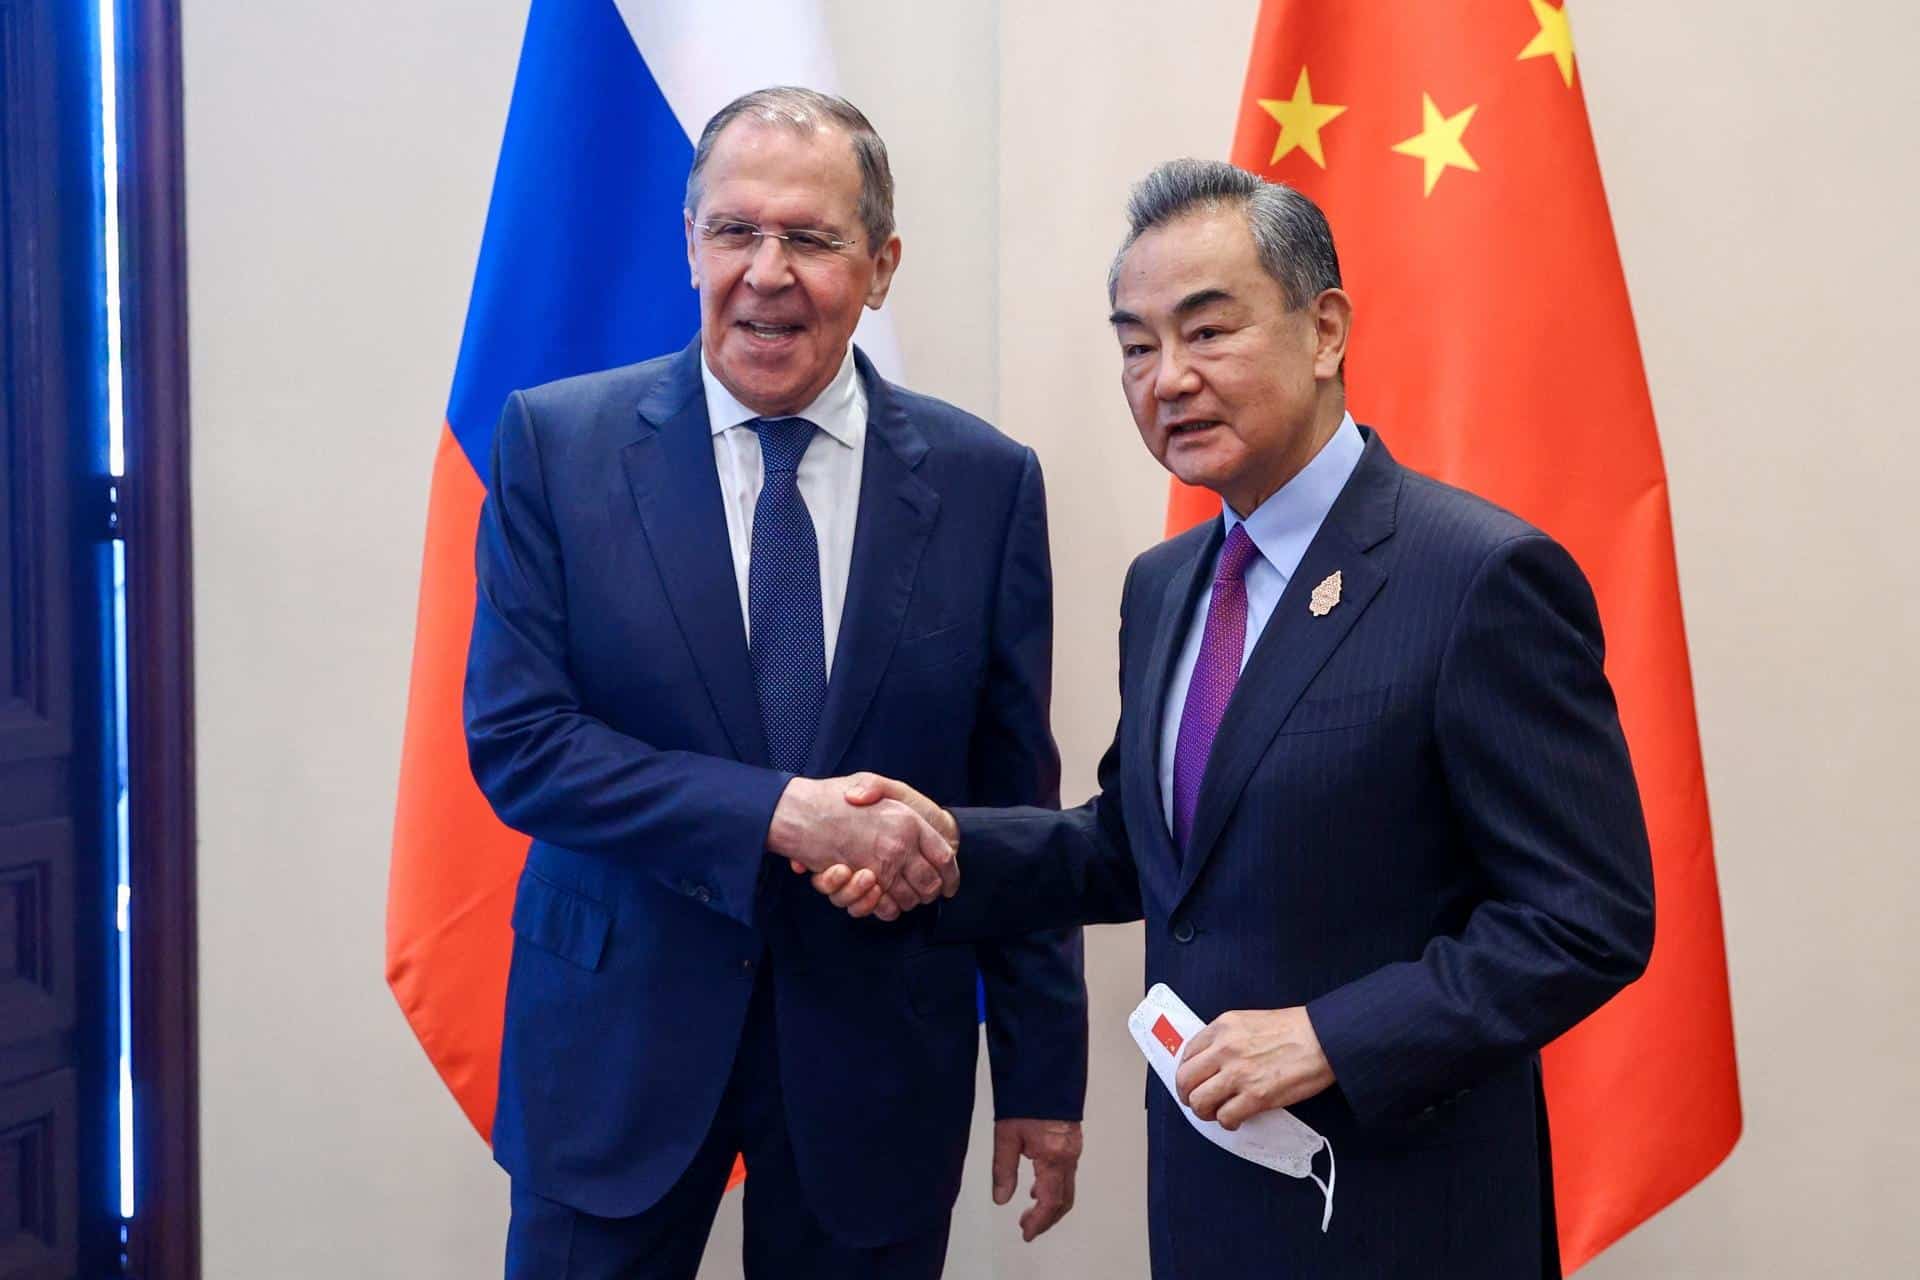 Il ministro degli Esteri cinese Wang Yi incontra Putin e Lavrov a Mosca. Il Cremlino revoca il decreto sulla sovranità della Moldavia